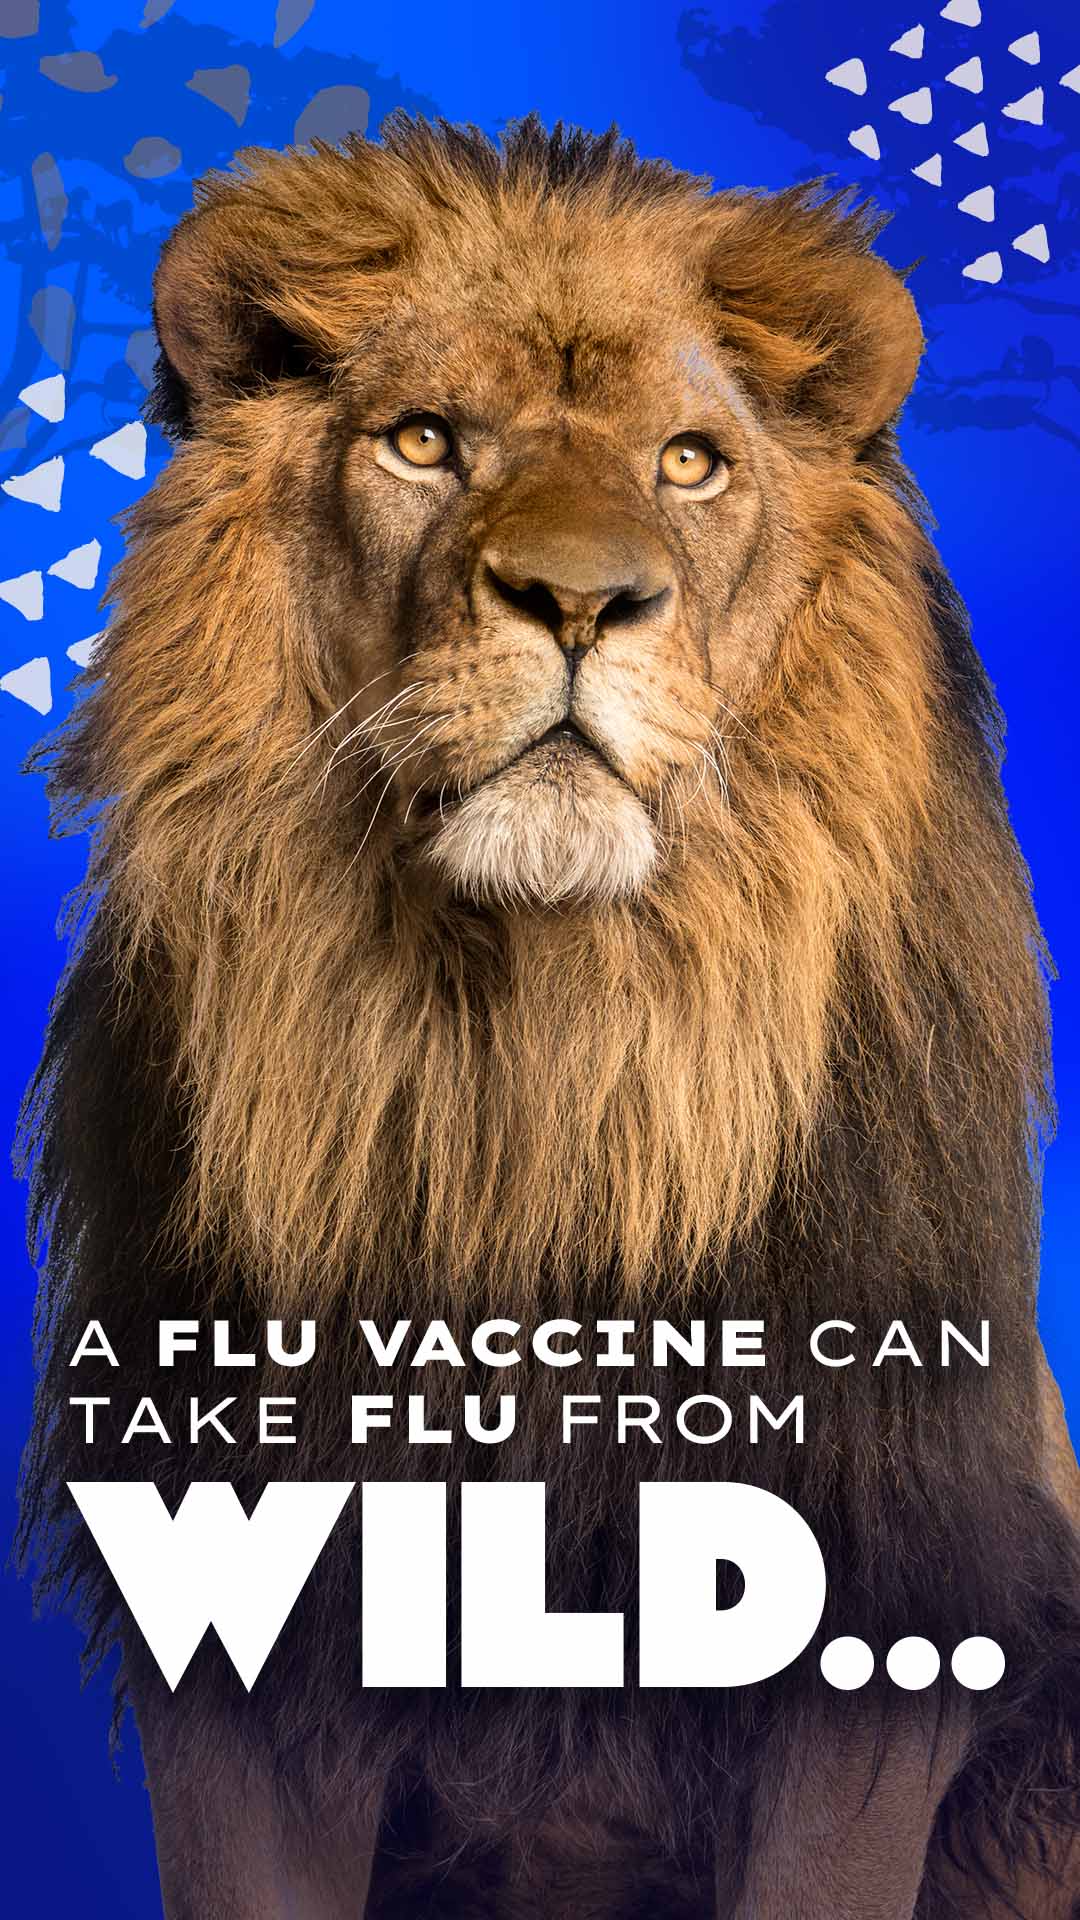 A flu vaccine can take flu from wild